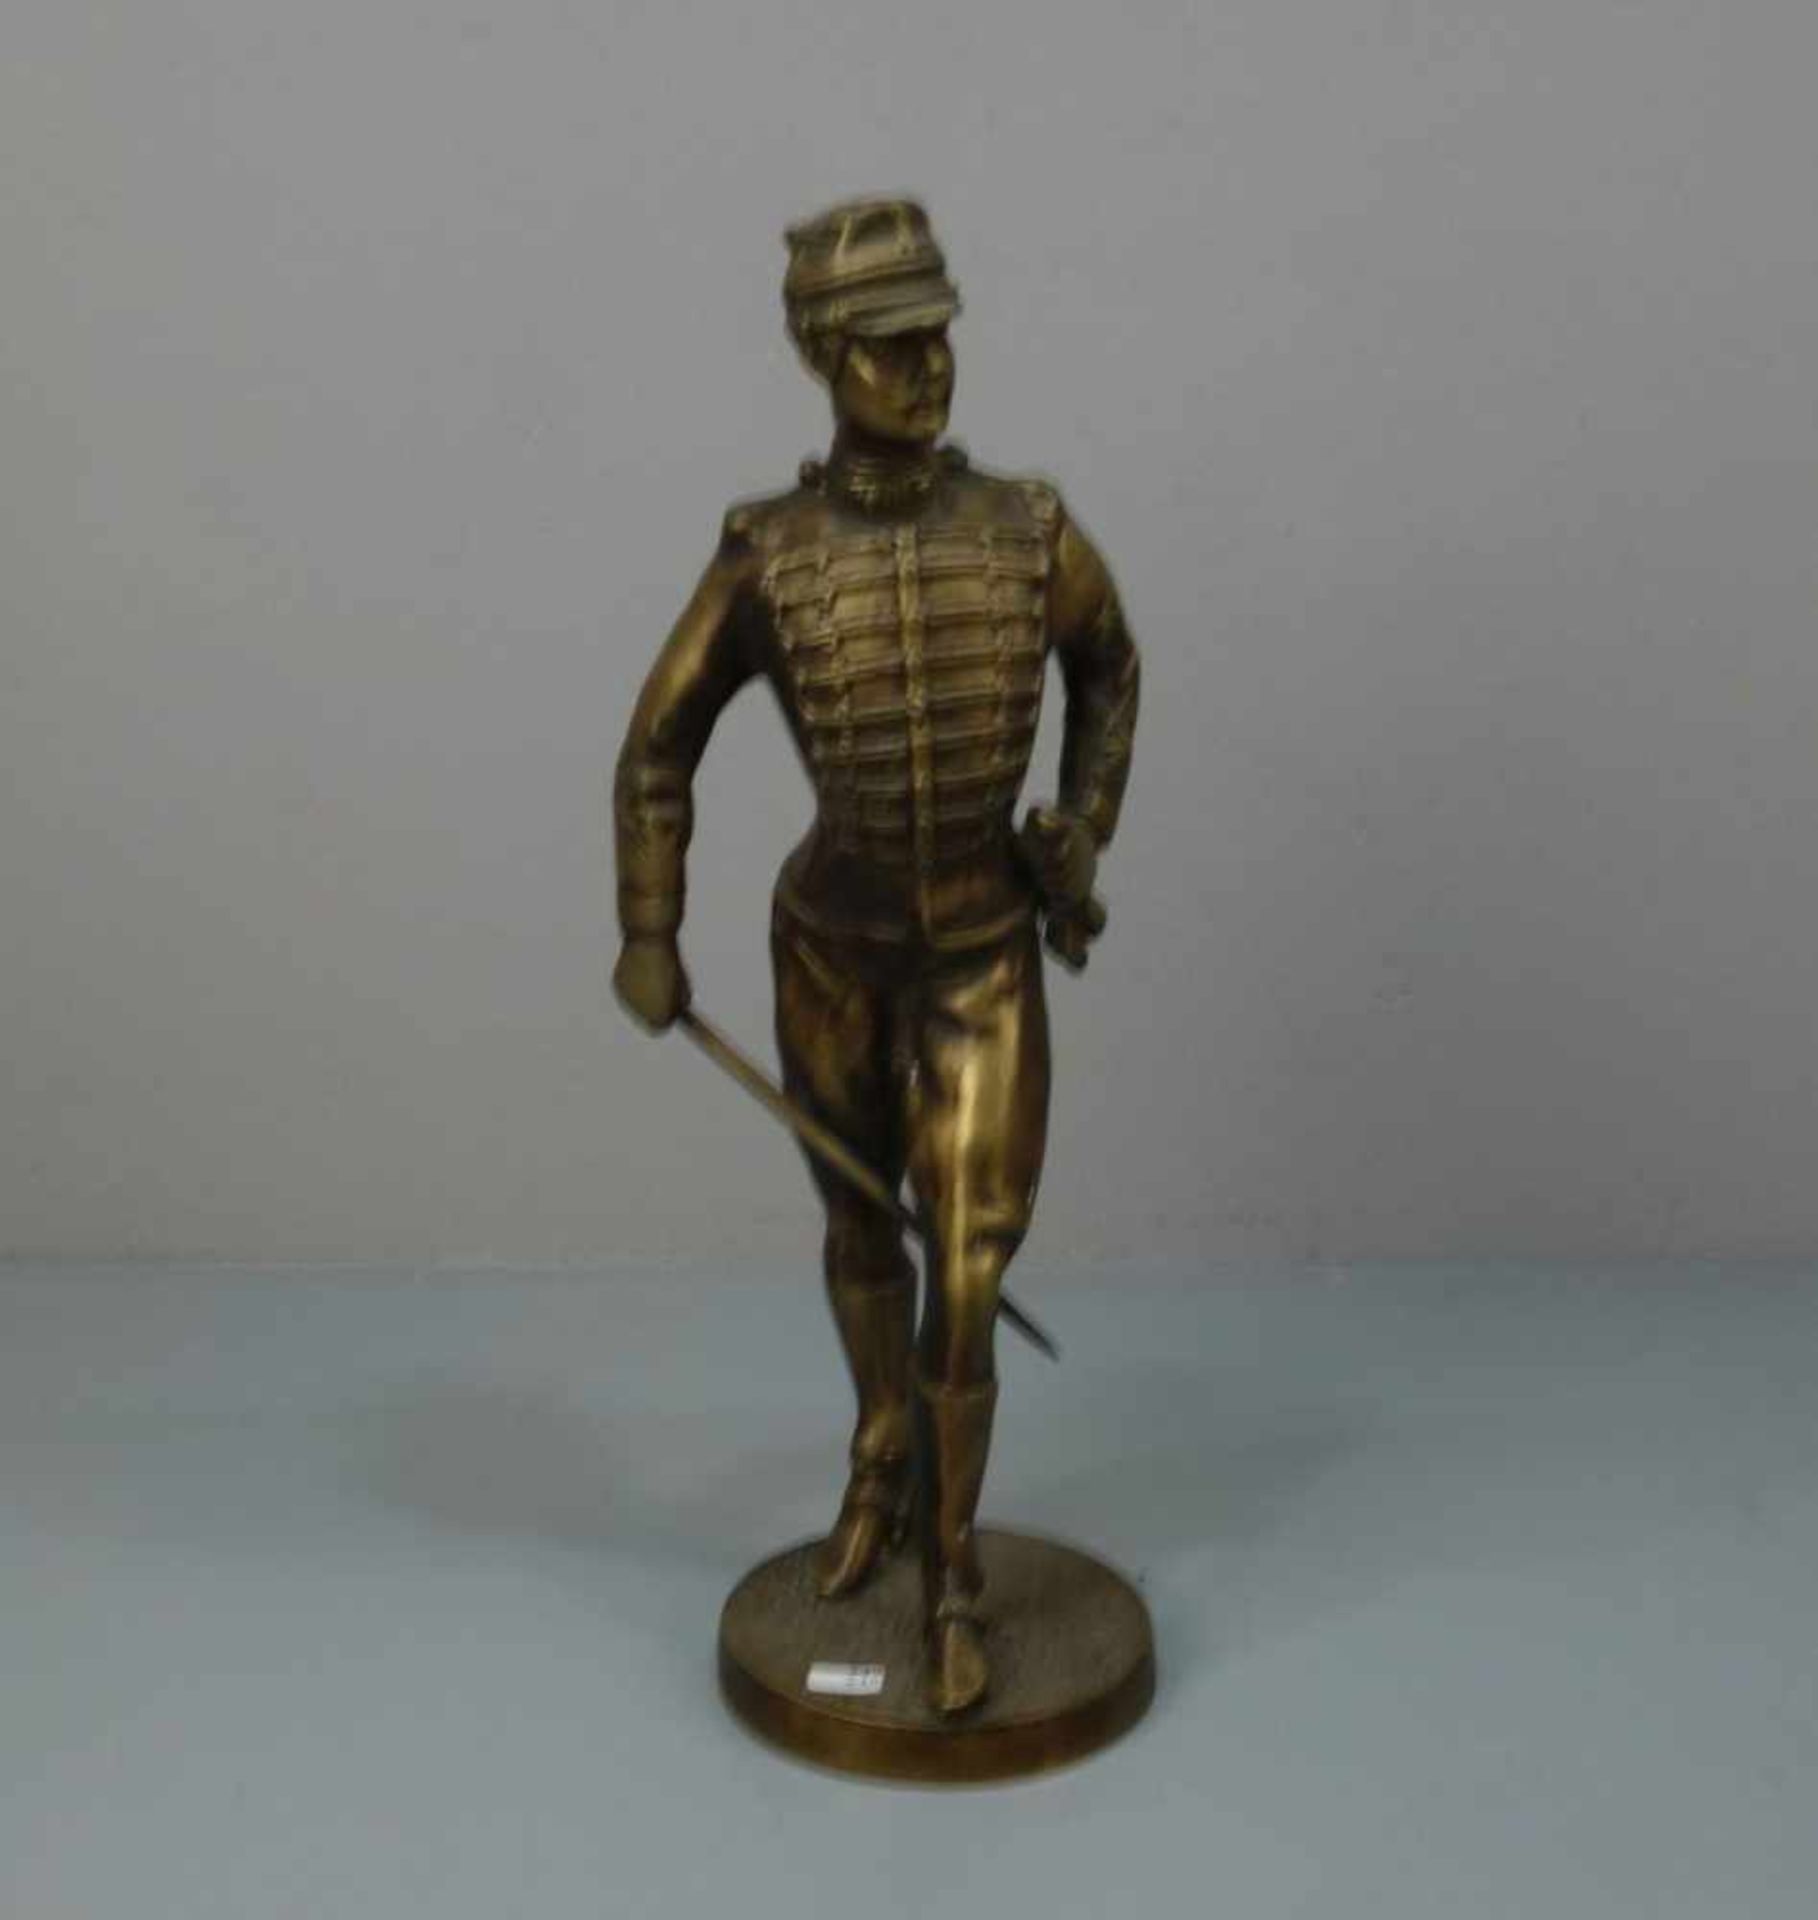 SKULPTUR (20./21. Jh.): "Husar", Bronze, goldfarben patiniert mit braunen Akzentuierungen.